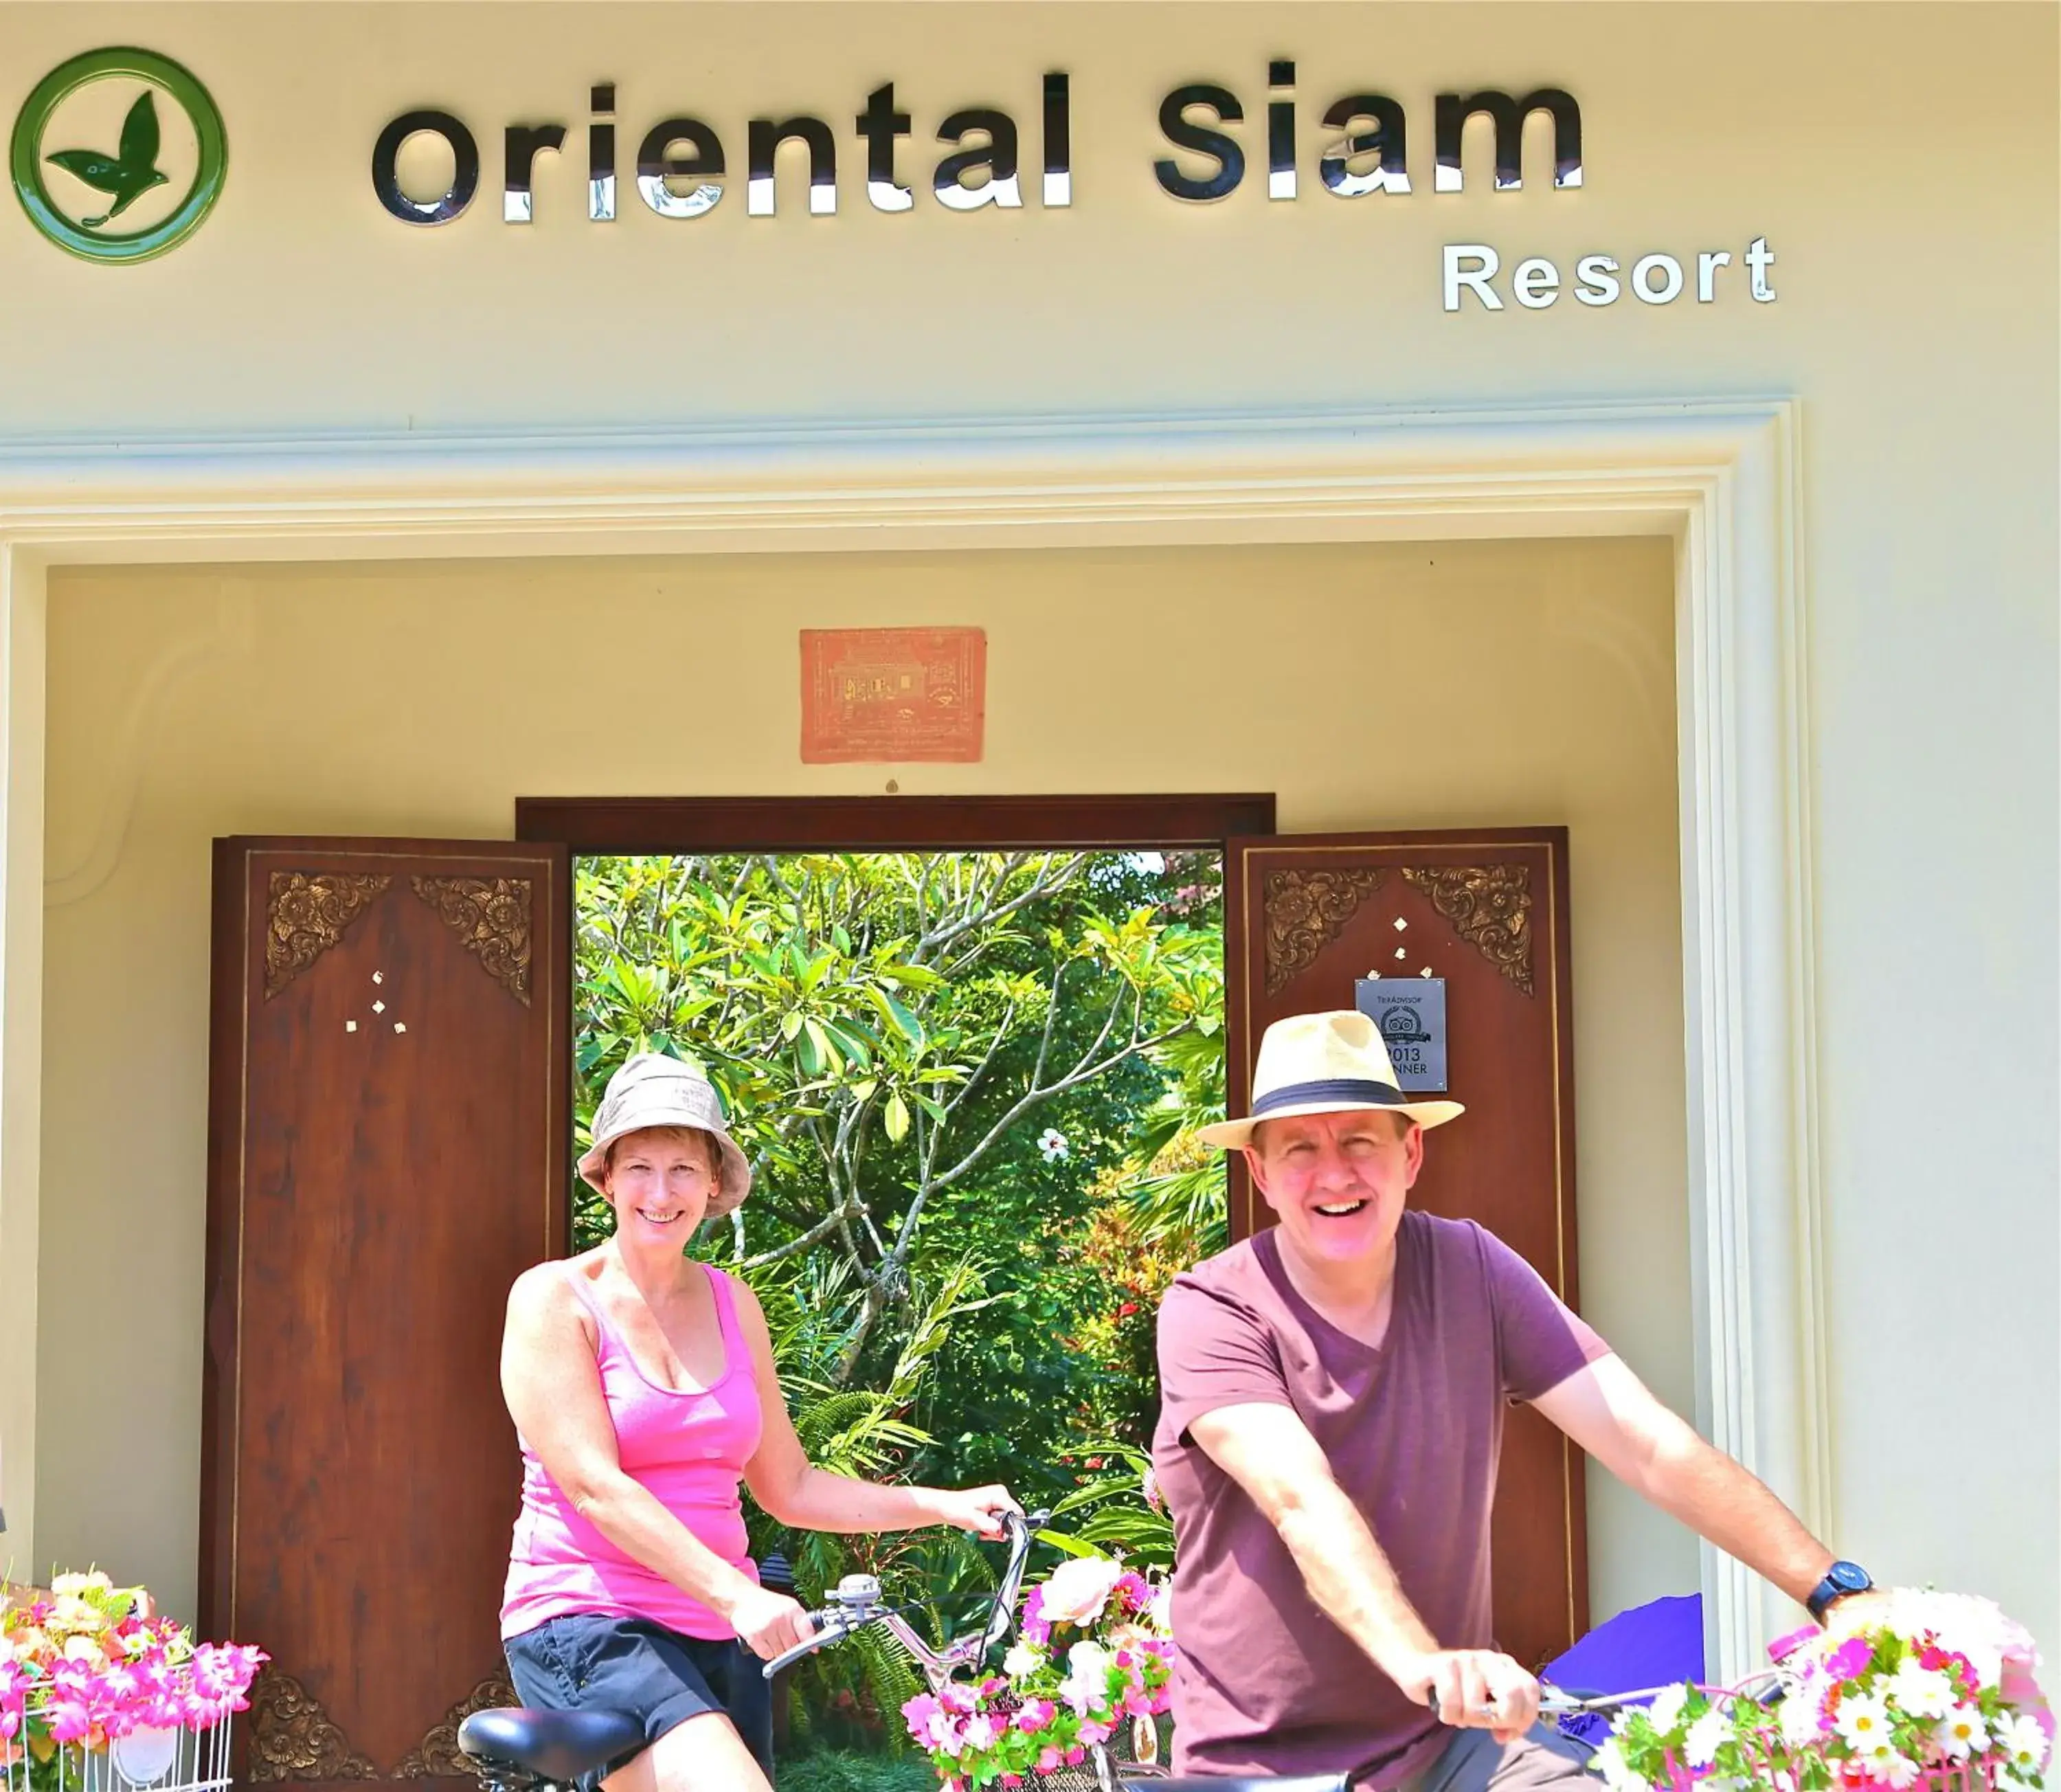 People in Oriental Siam Resort